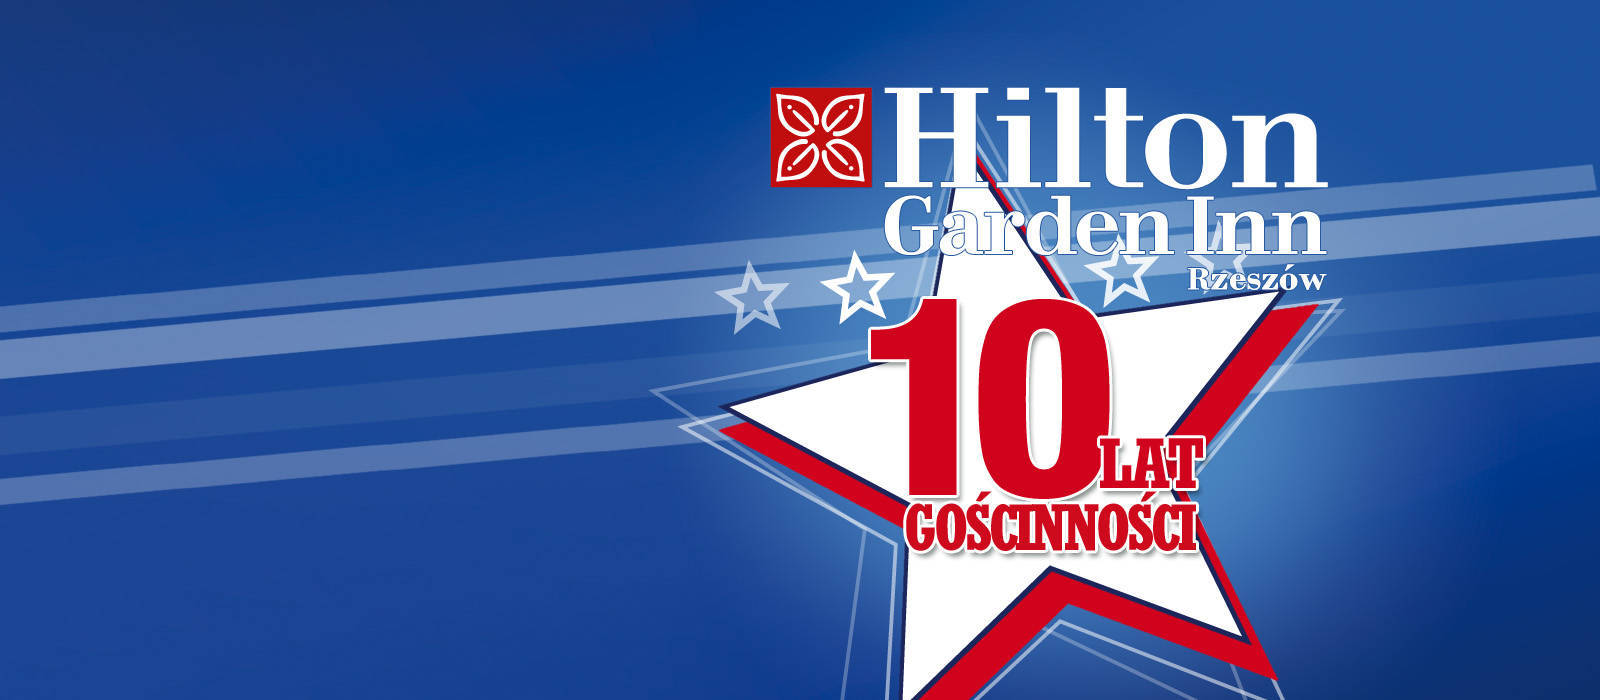 10 lat gościnności Hilton Garden Inn Rzeszów  - 1